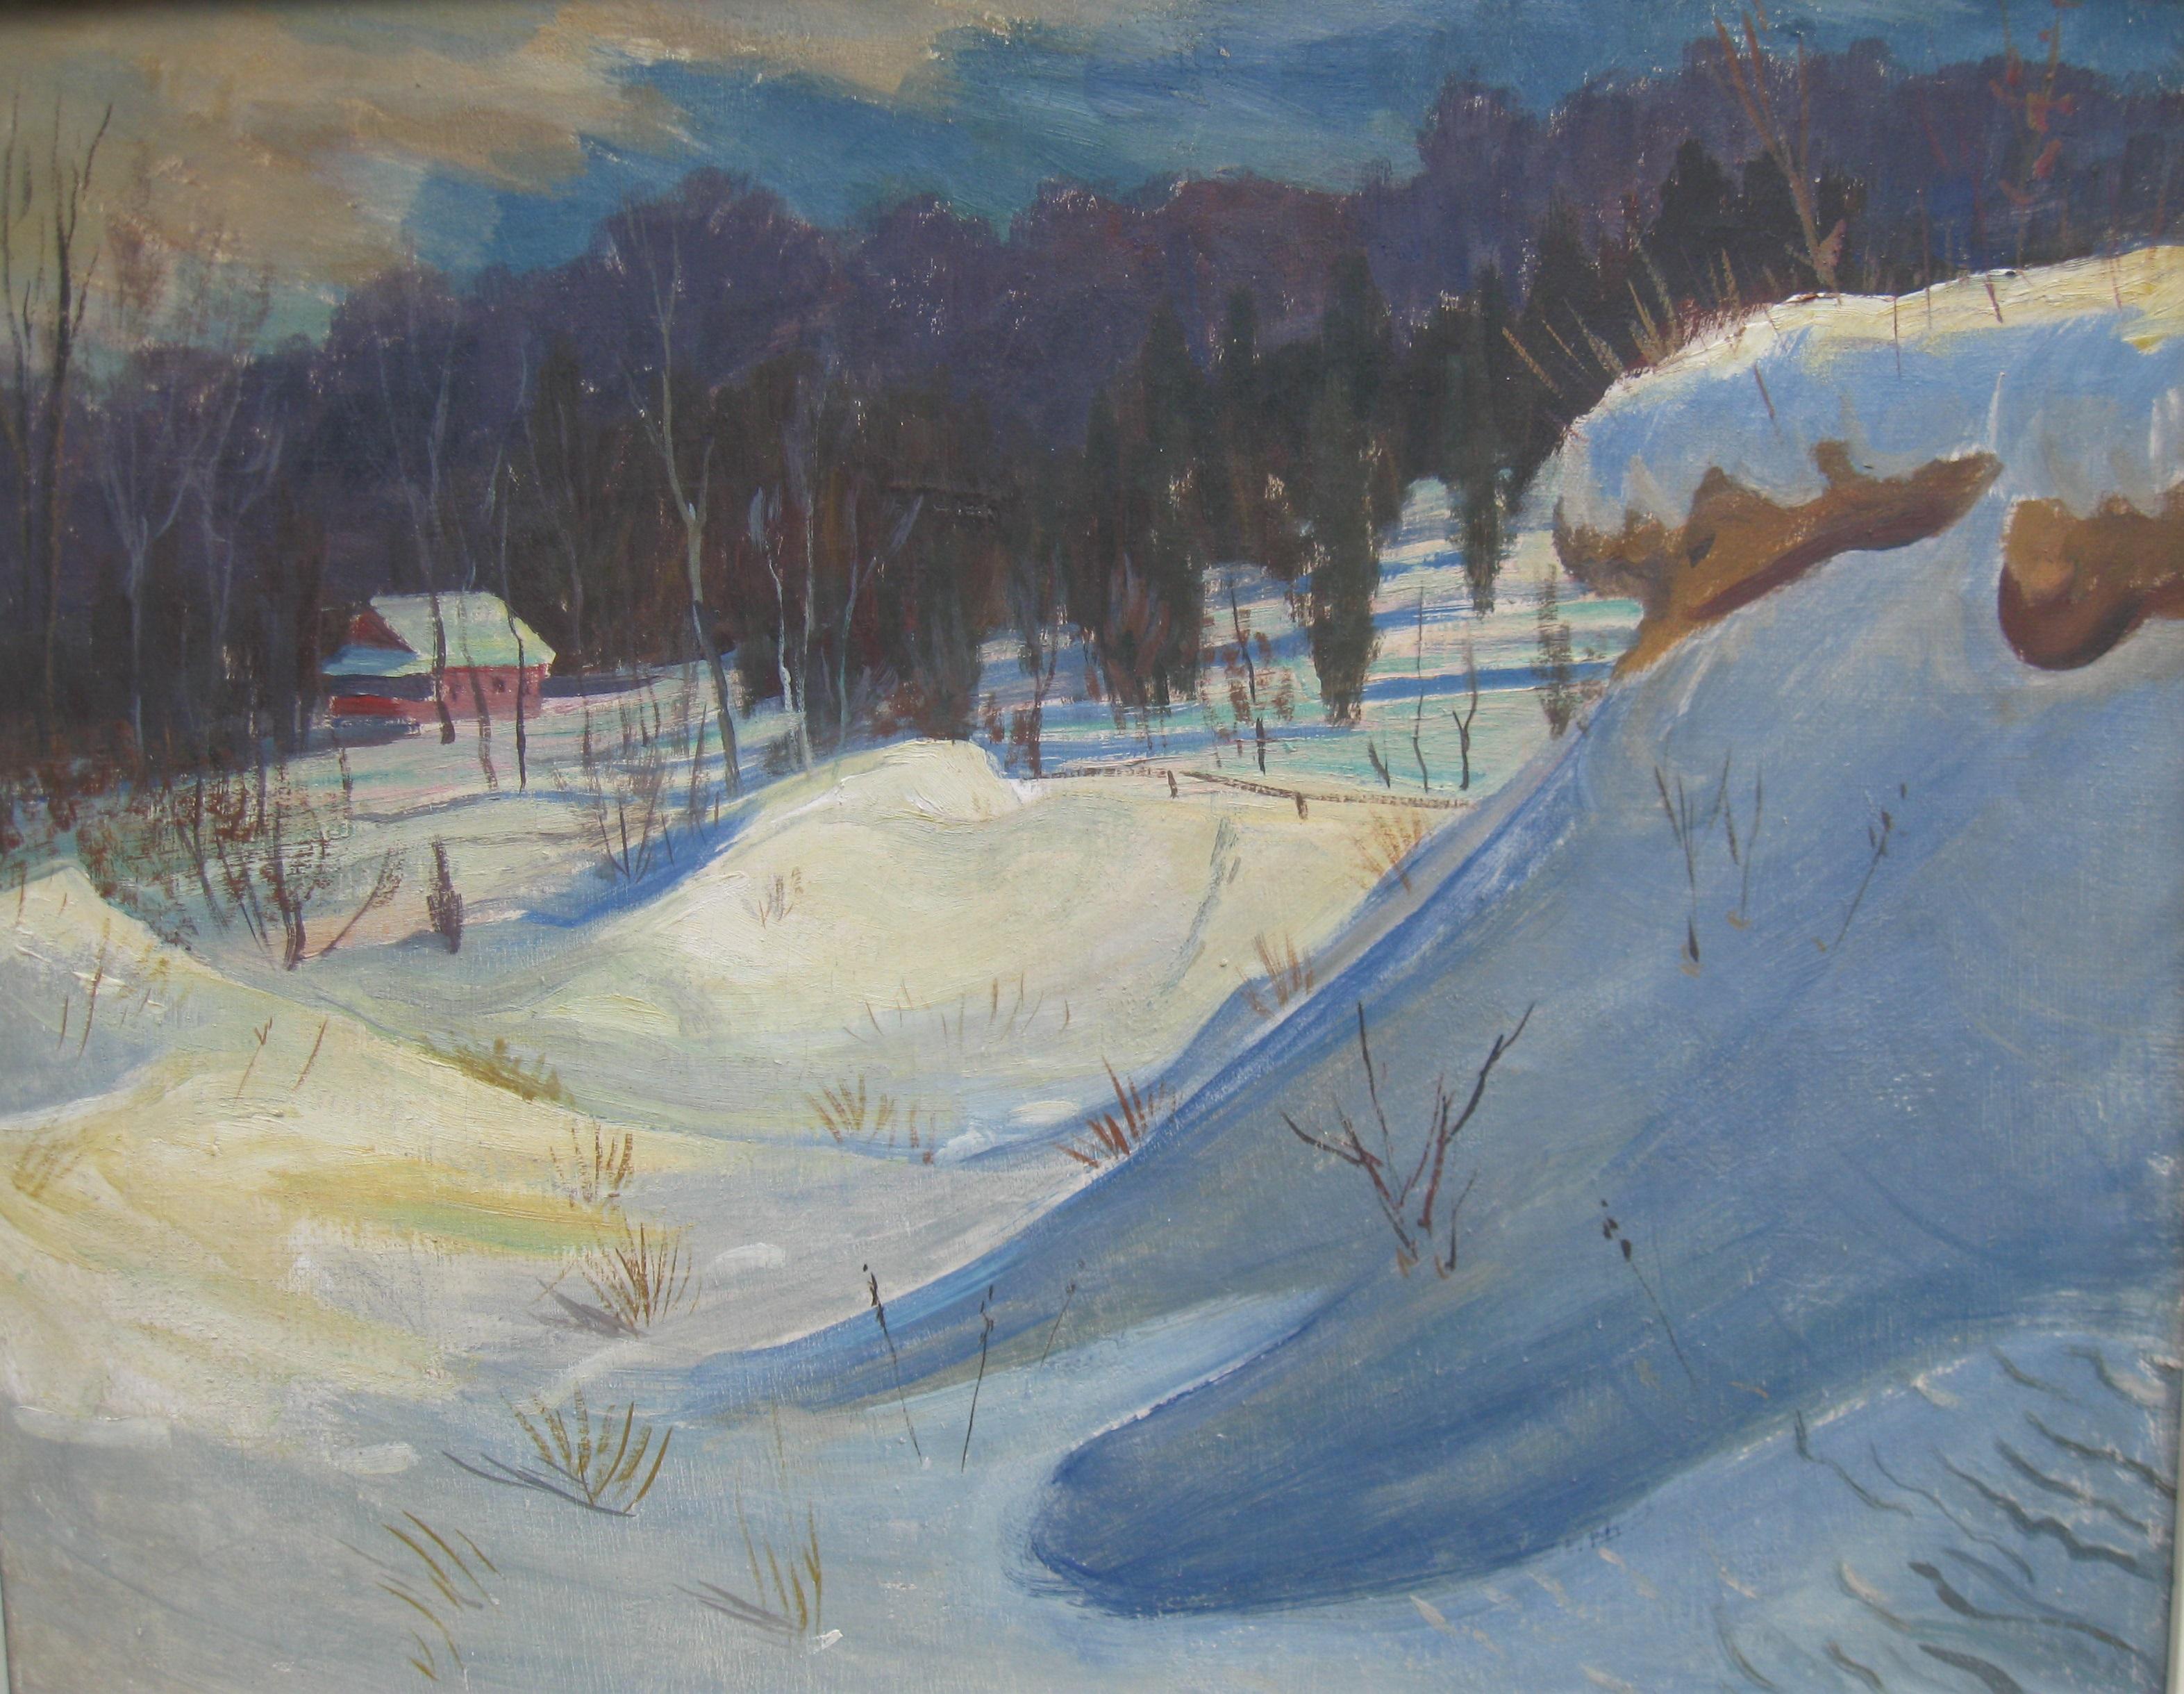 Schneedriften in einer bewaldeten Landschaft, Öl auf Leinwand, ca. 1950er Jahre – Painting von Unknown